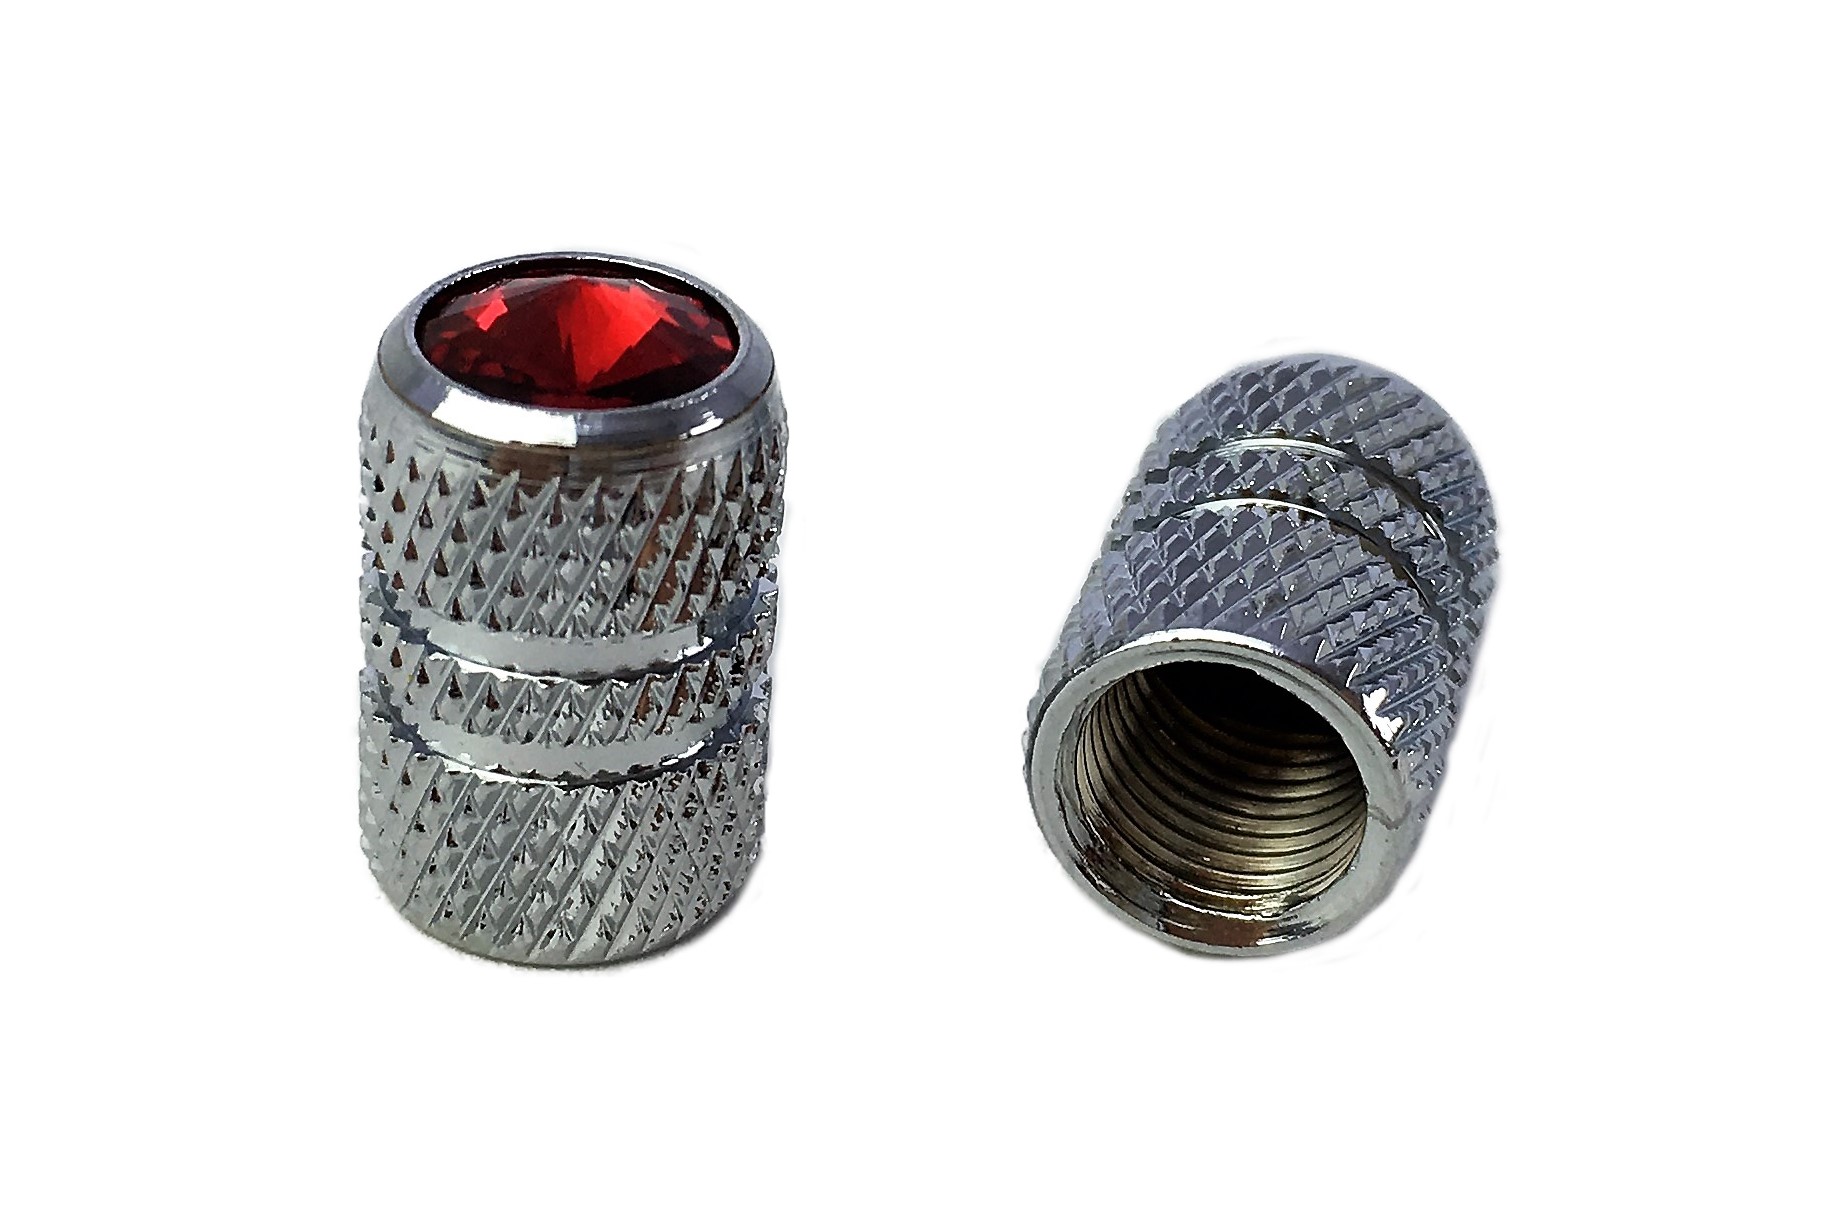 Tappi a piolo per valvola - cilindro scanalato in alluminio e pietra preziosa (rossa)